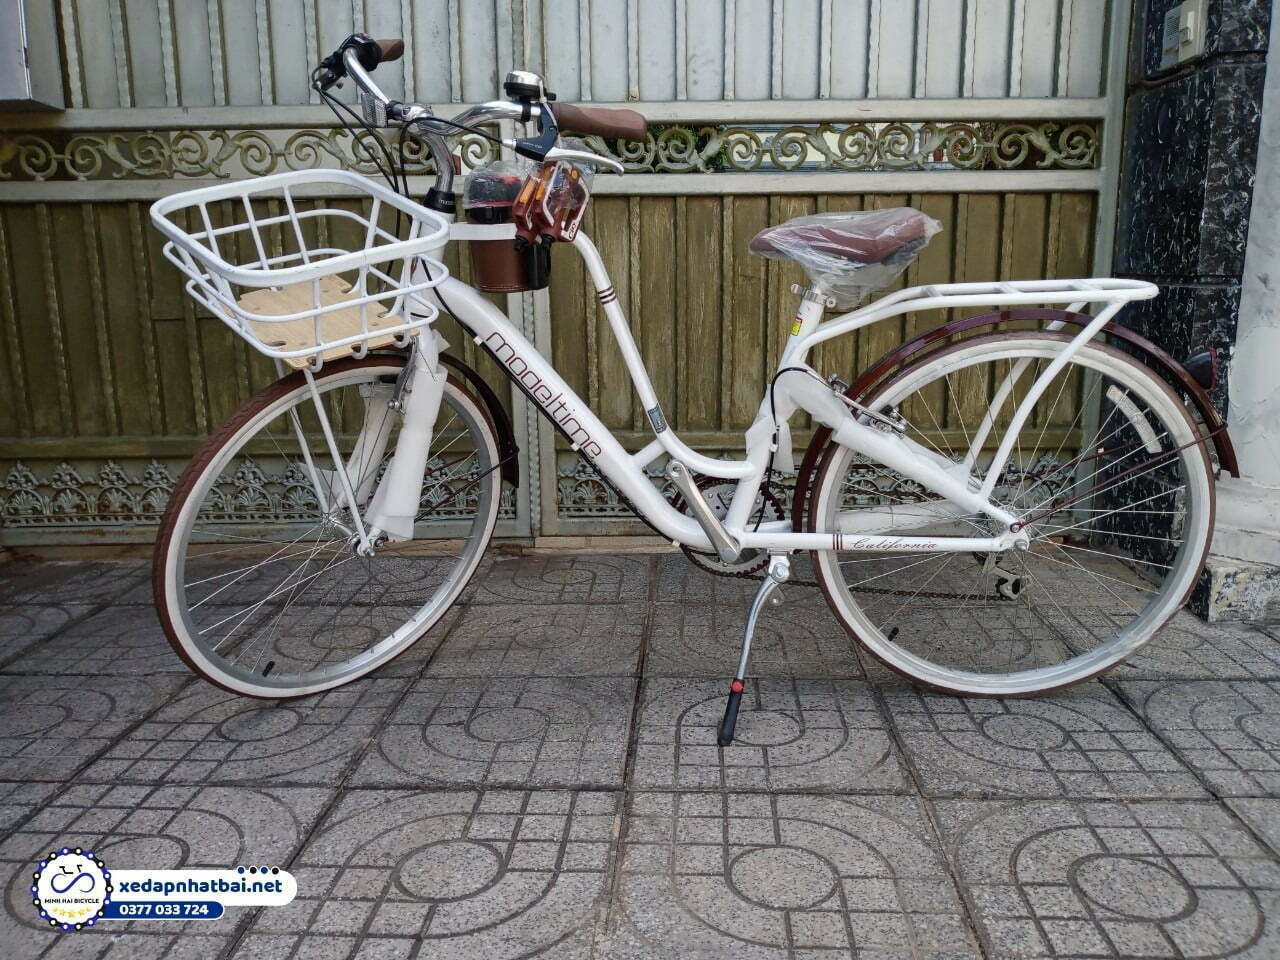 Còn đối với dòng xe đạp người lớn, thì khi mua xe đạp tại Vũng Tàu, bạn hãy chắc chắn rằng khung, tay lái và yên xe phù hợp với dáng người của bạn.